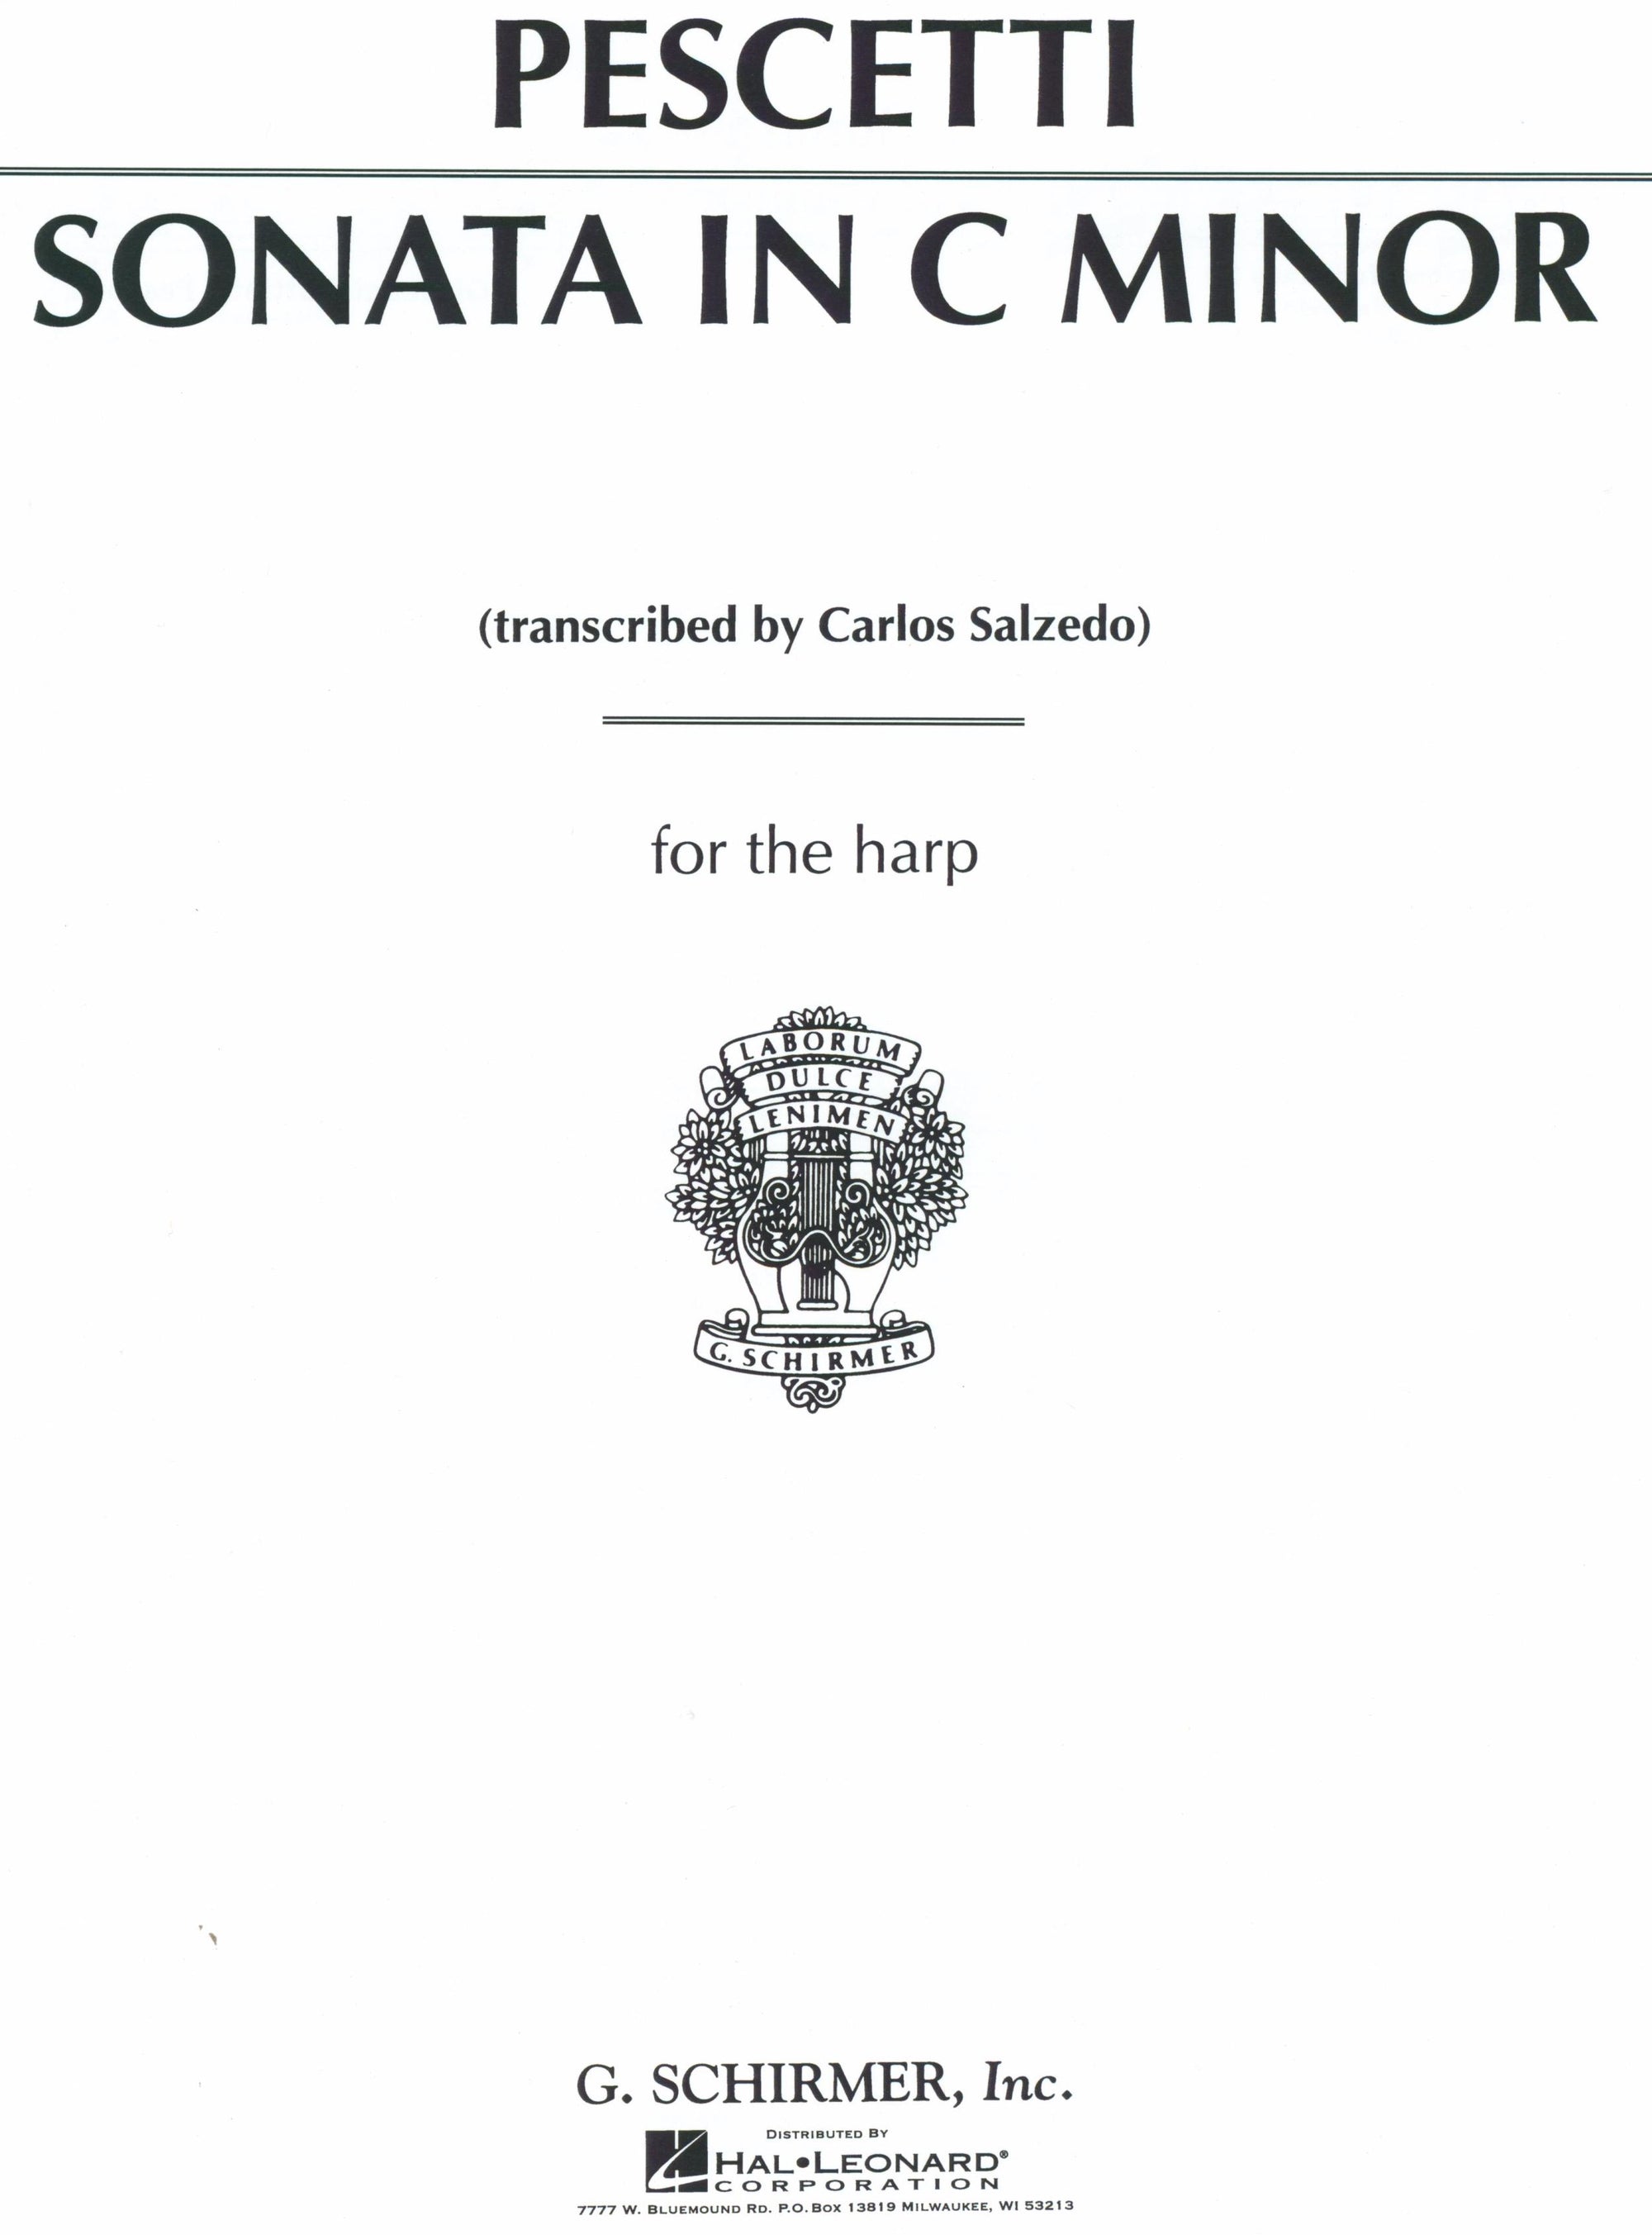 Pescetti: Sonata in C Minor (arr. for harp)